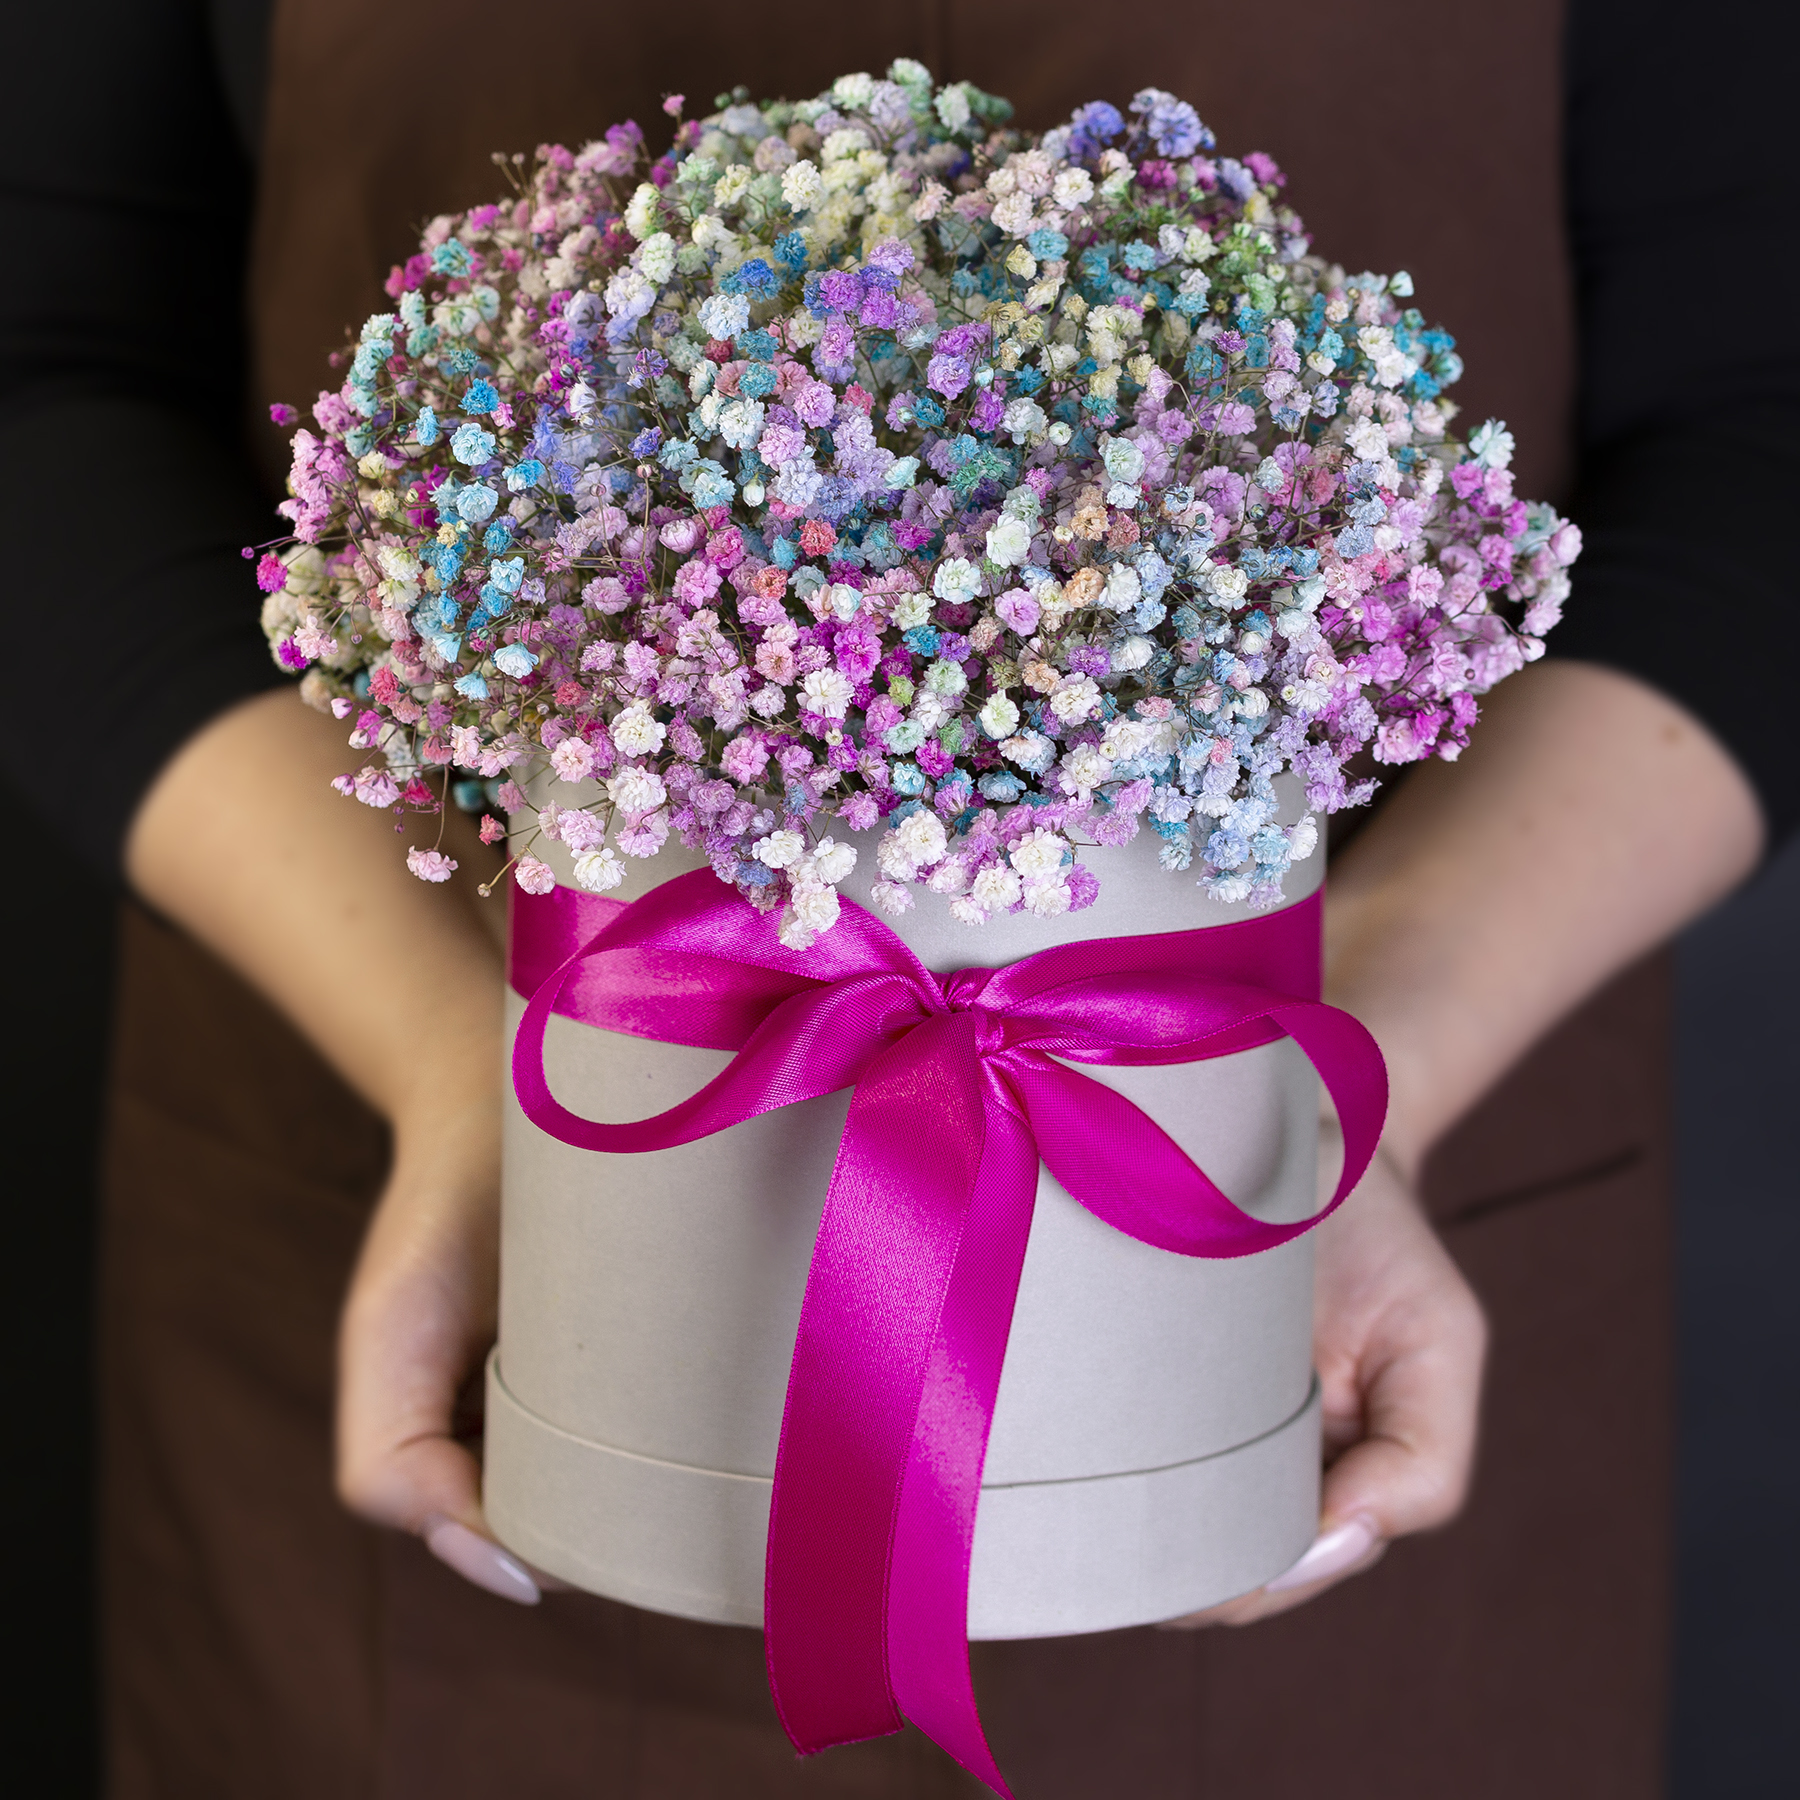 Какие цветы дарят на свадьбу для пожелания счастливого брака